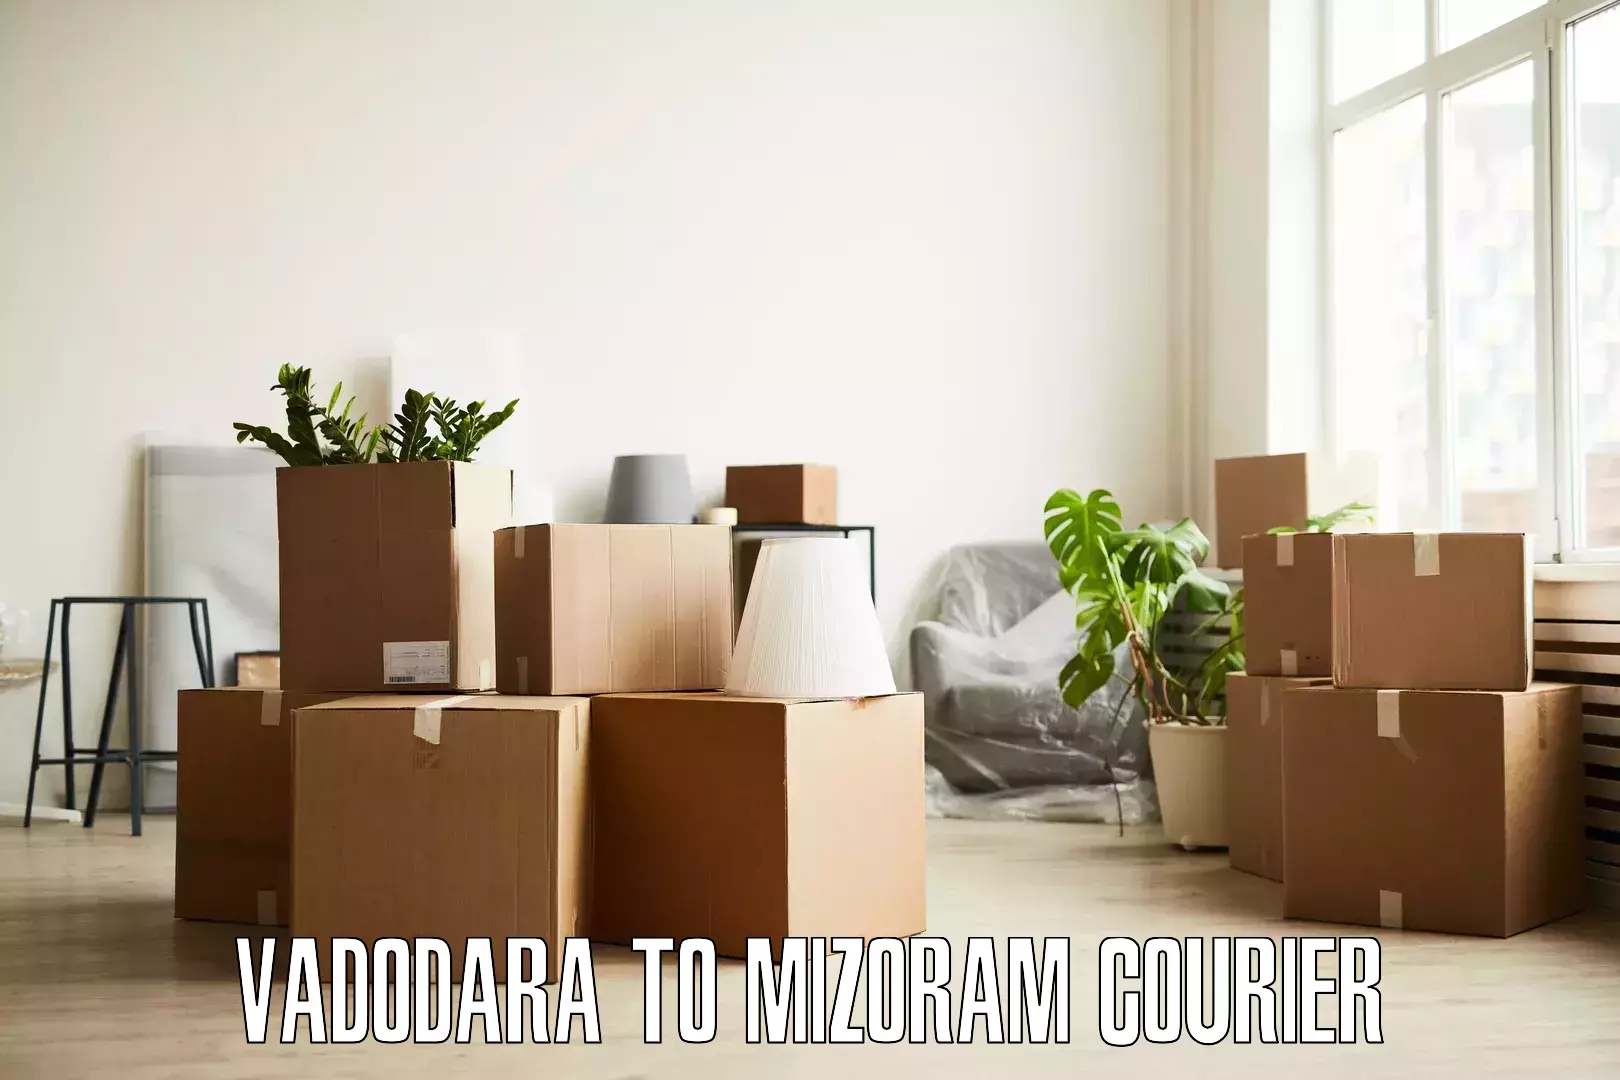 Customized furniture moving Vadodara to Khawzawl